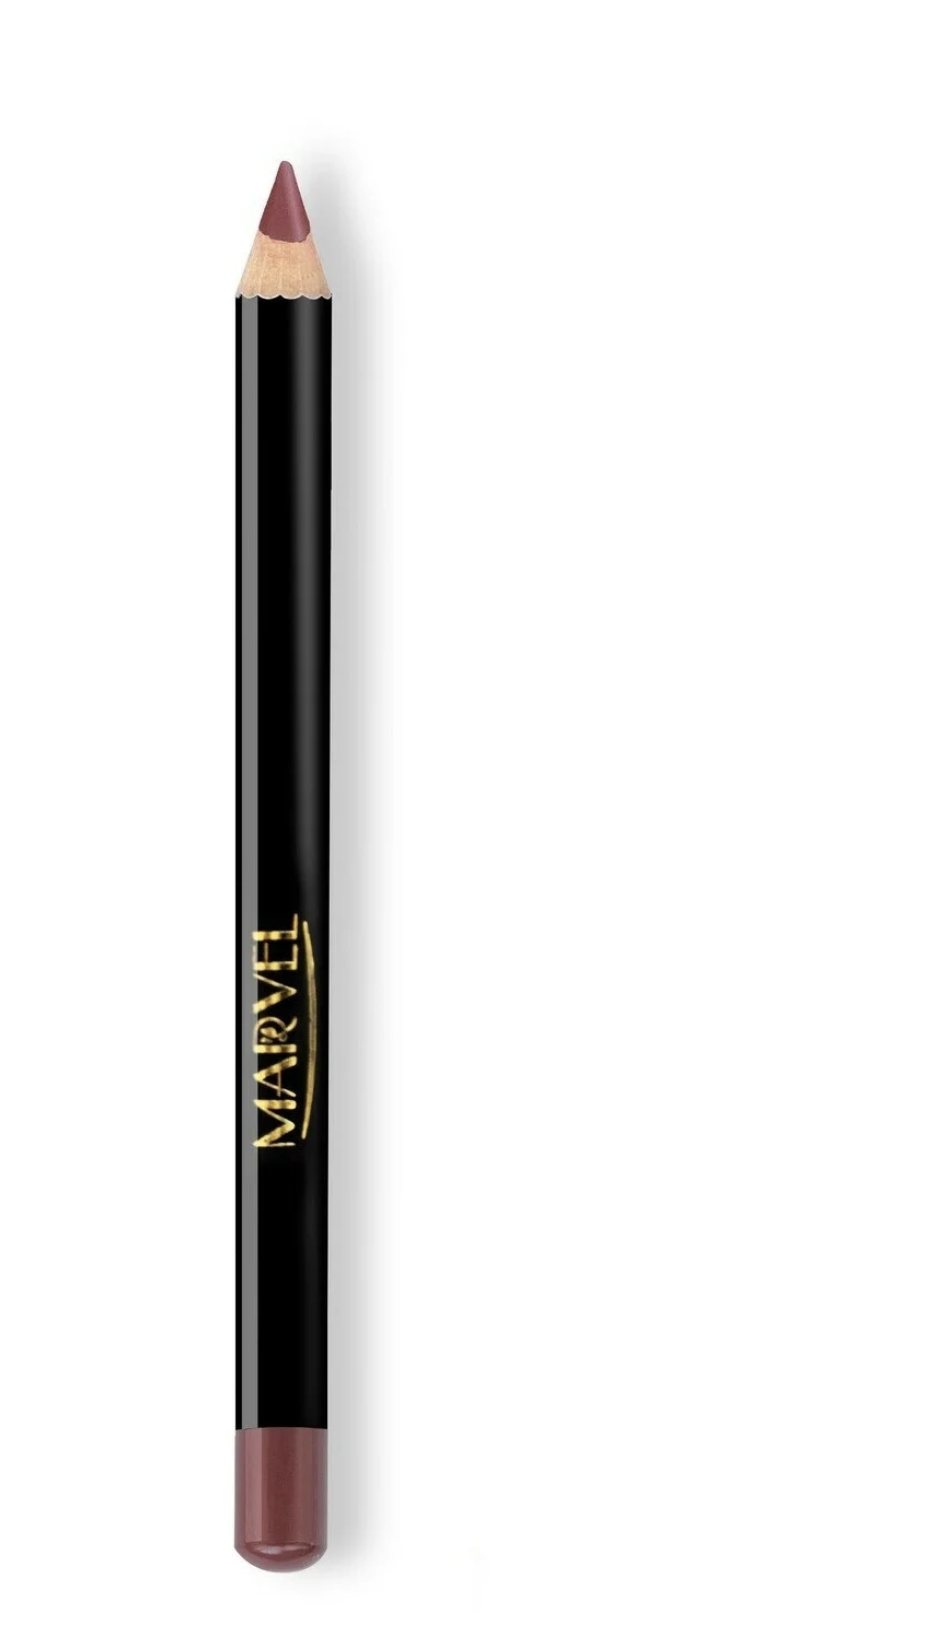    / Marvel Cosmetics -    Lip Liner Pencil  325 Mauve